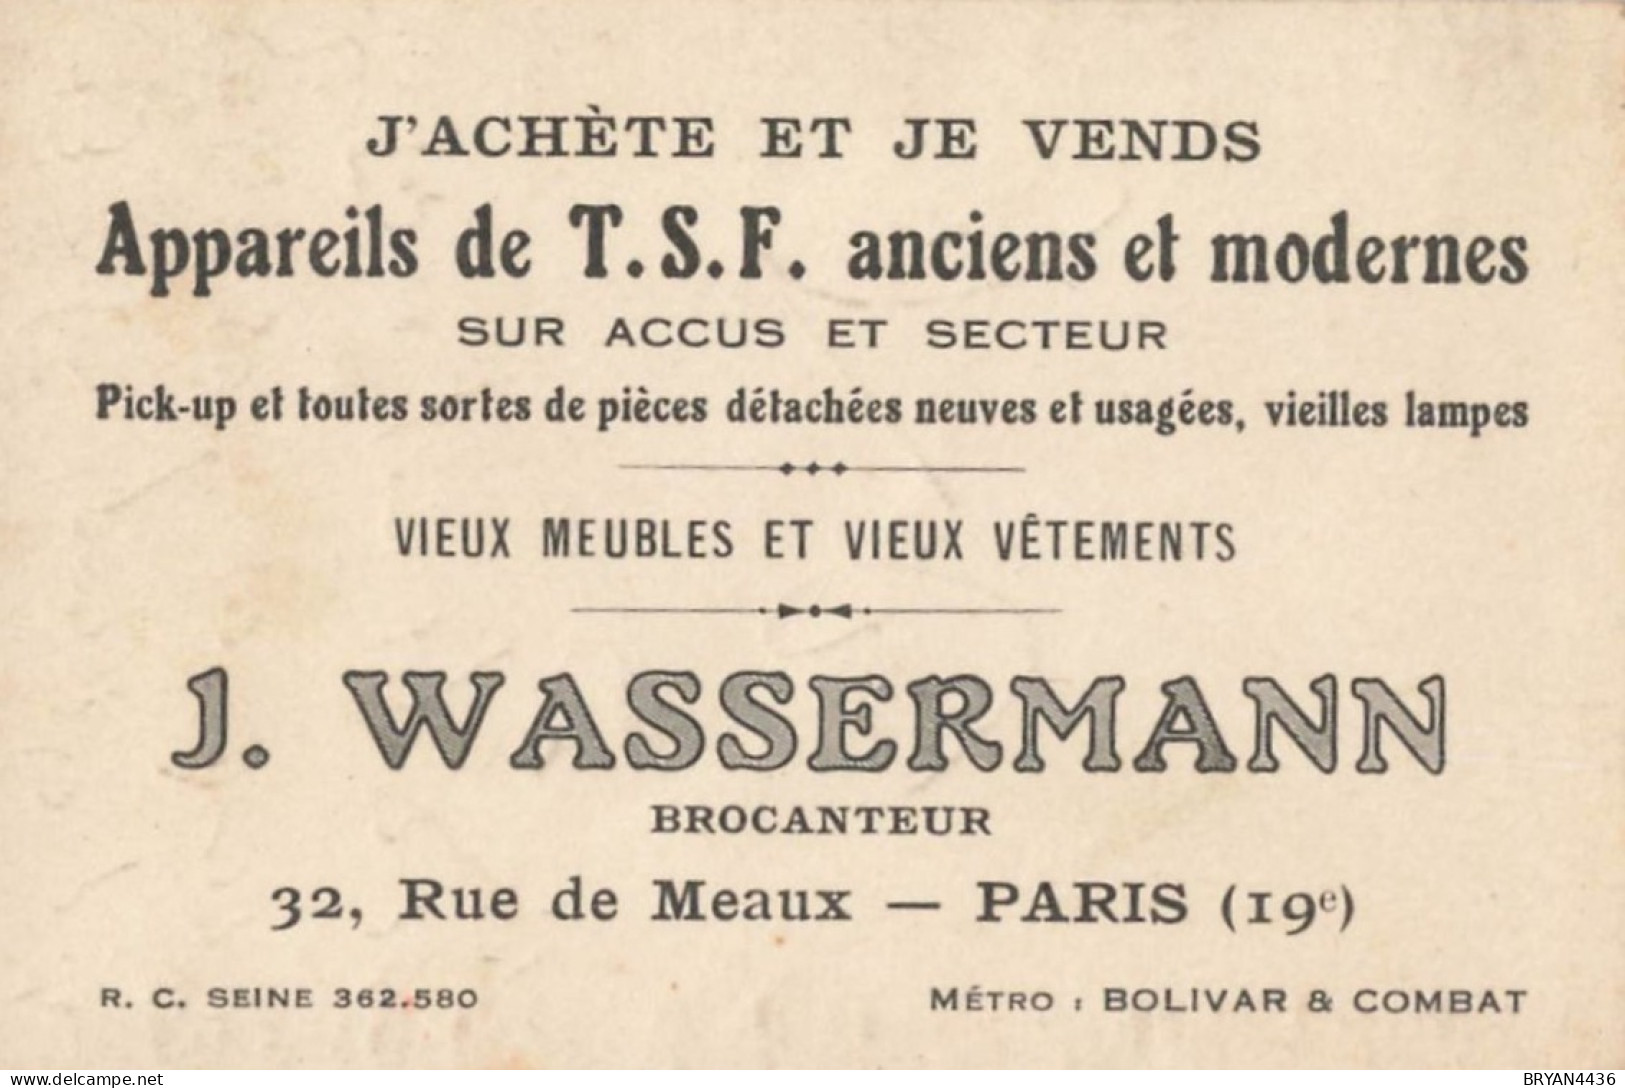 PARIS - 19 ème - BROCANTEUR  - J. WASSEMANN - 32, RUE De MEAUX - CARTE COMMERCIALE ANCIENNE - (7x10,5cm) - Paris (19)